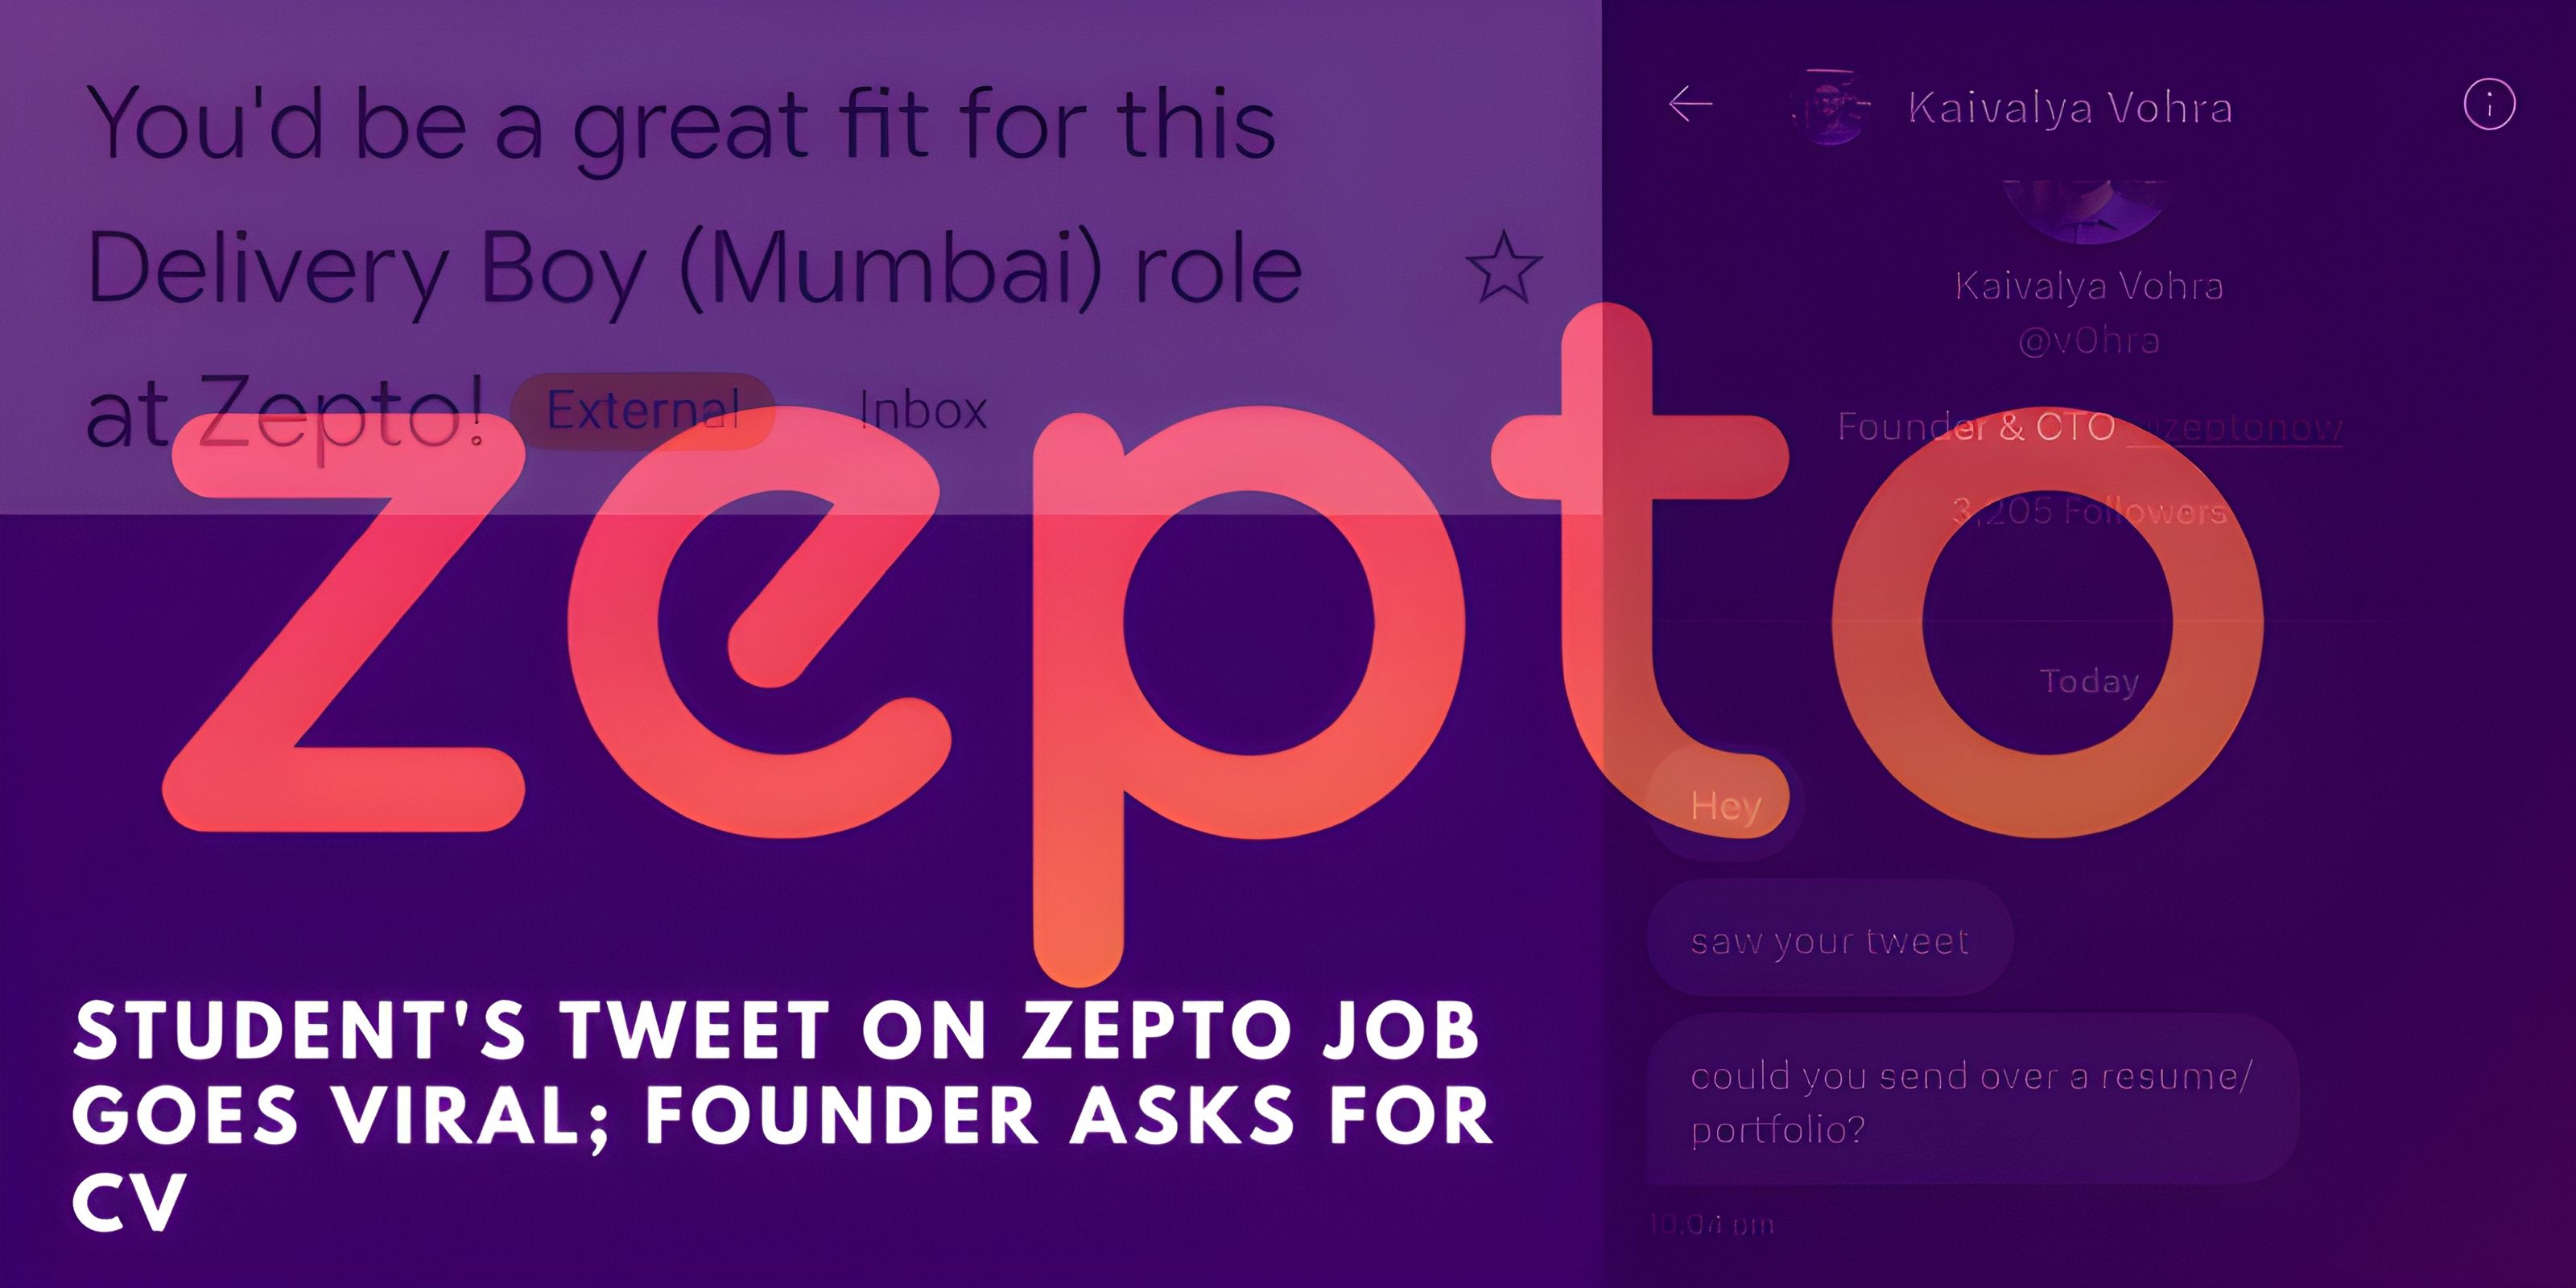 Student's Tweet on Zepto Job Goes Viral; Founder Asks for CV